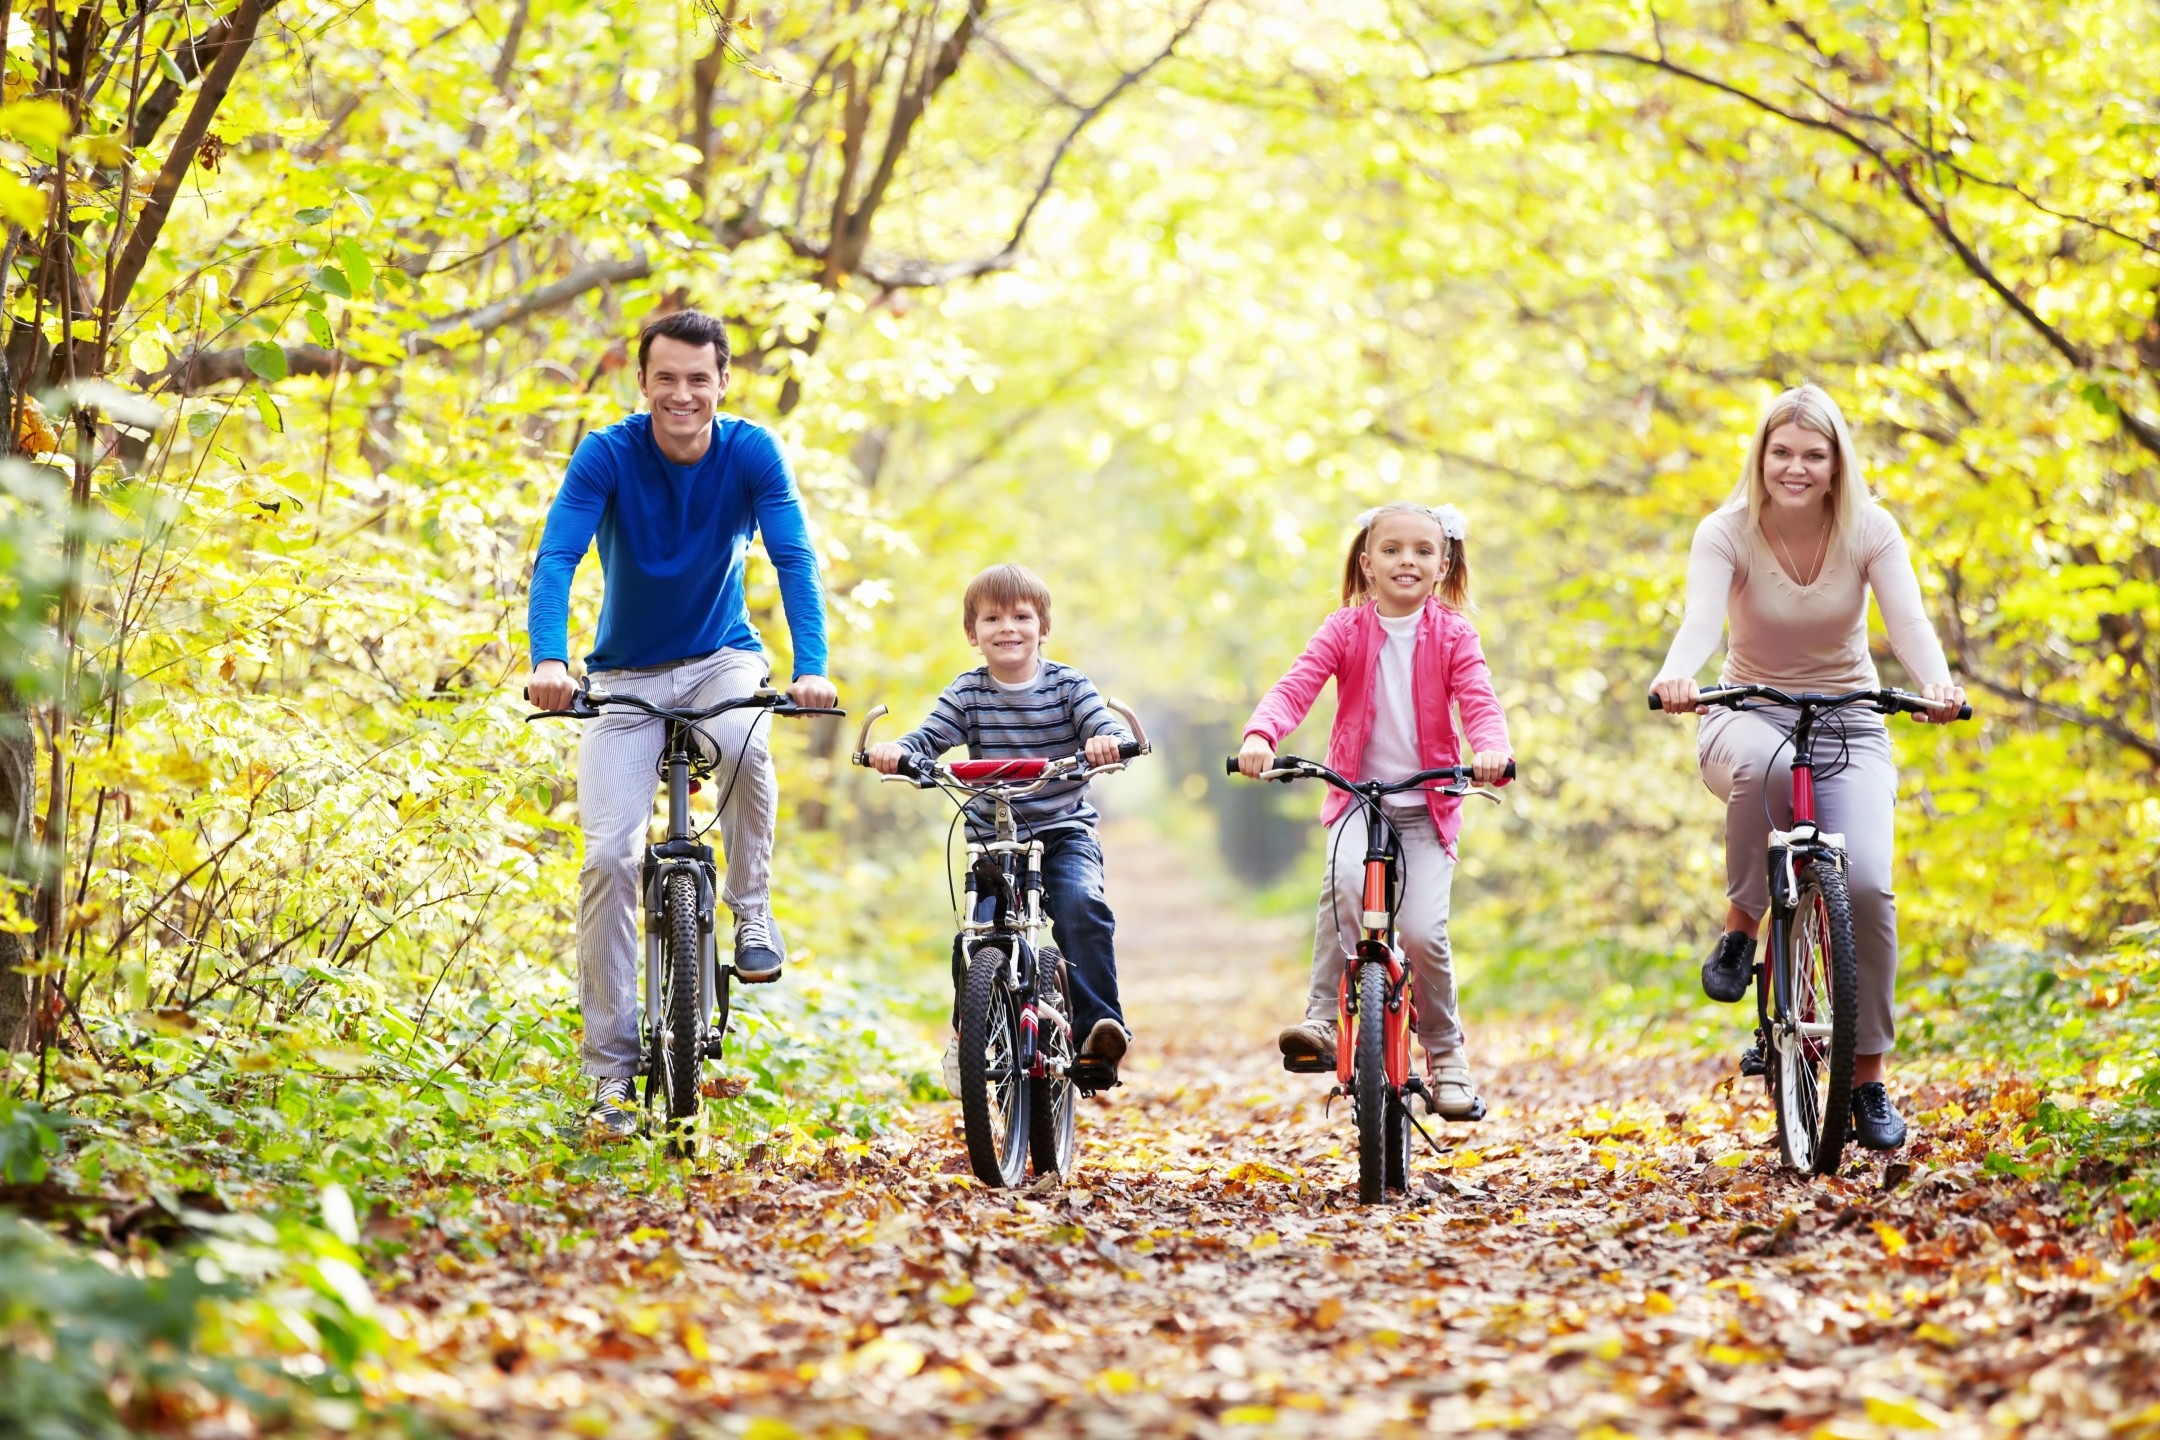 Про будущее семьи. Семья на велосипедах. Семья на прогулке. Прогулка на природе. Активный образ жизни.